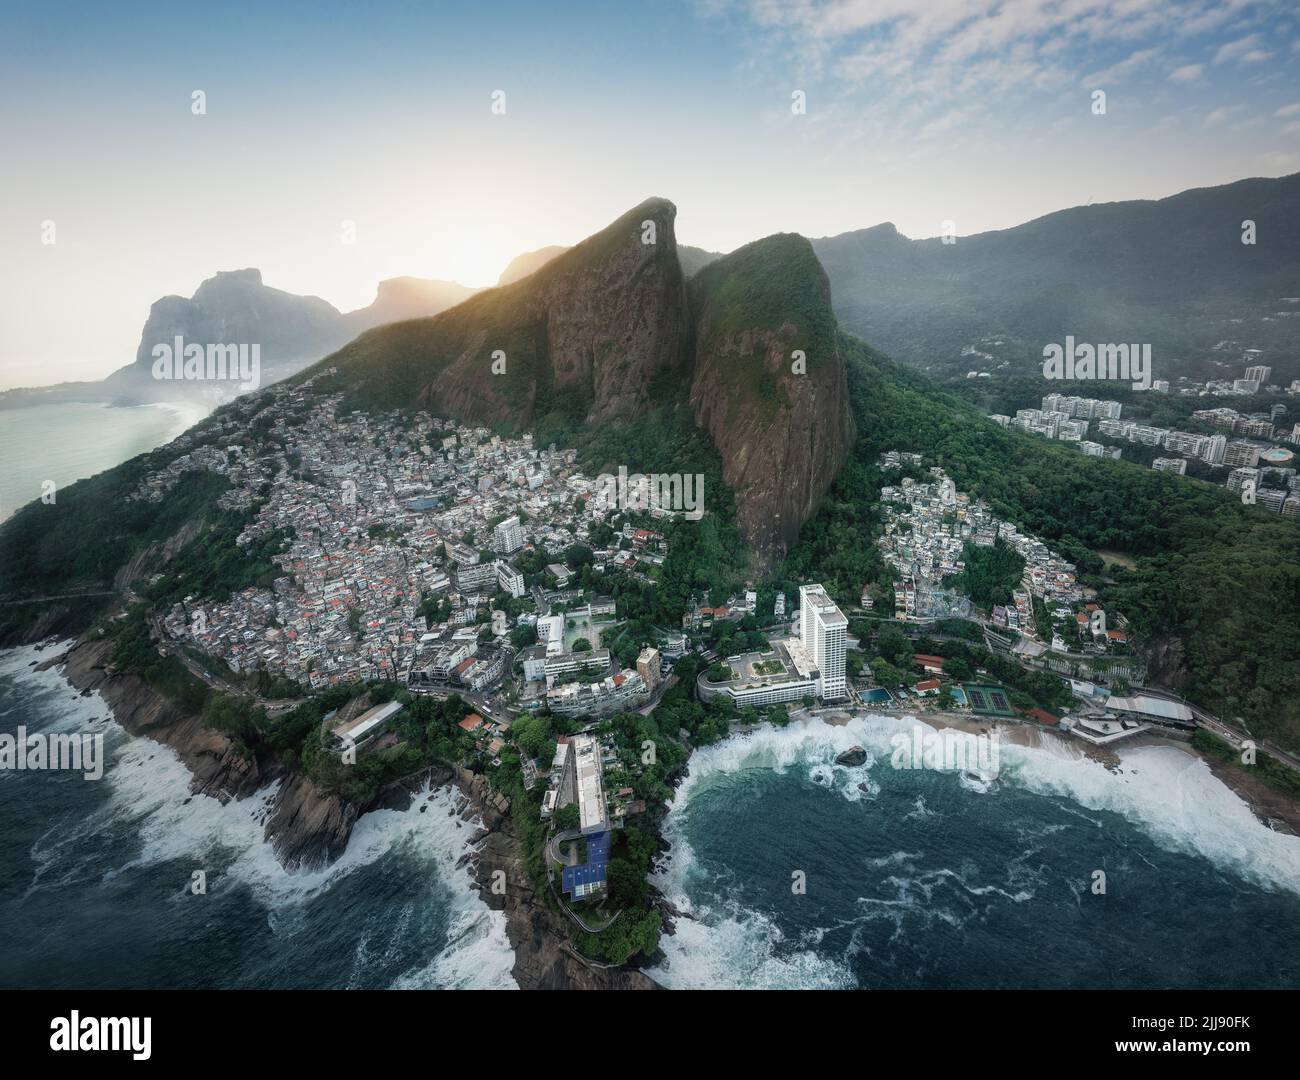 Aerial view of Dois Irmaos Mountain (Morro Dois Irmaos) with Vidigal Favela - Rio de Janeiro, Brazil Stock Photo